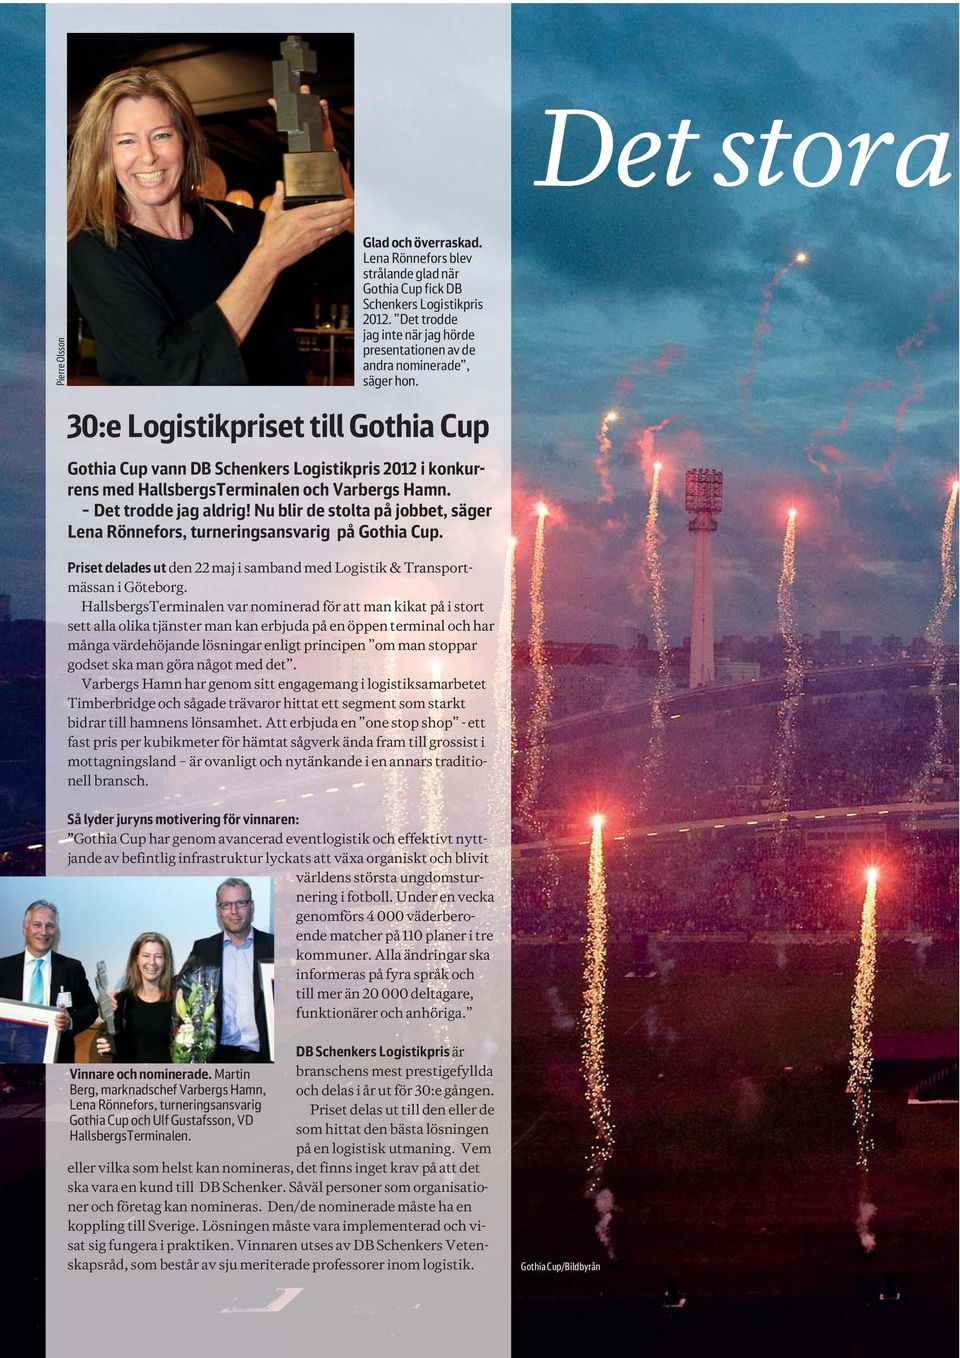 30:e Logistikpriset till Gothia Cup Gothia Cup vann DB Schenkers Logistikpris 2012 i konkurrens med HallsbergsTerminalen och Varbergs Hamn. Det trodde jag aldrig!